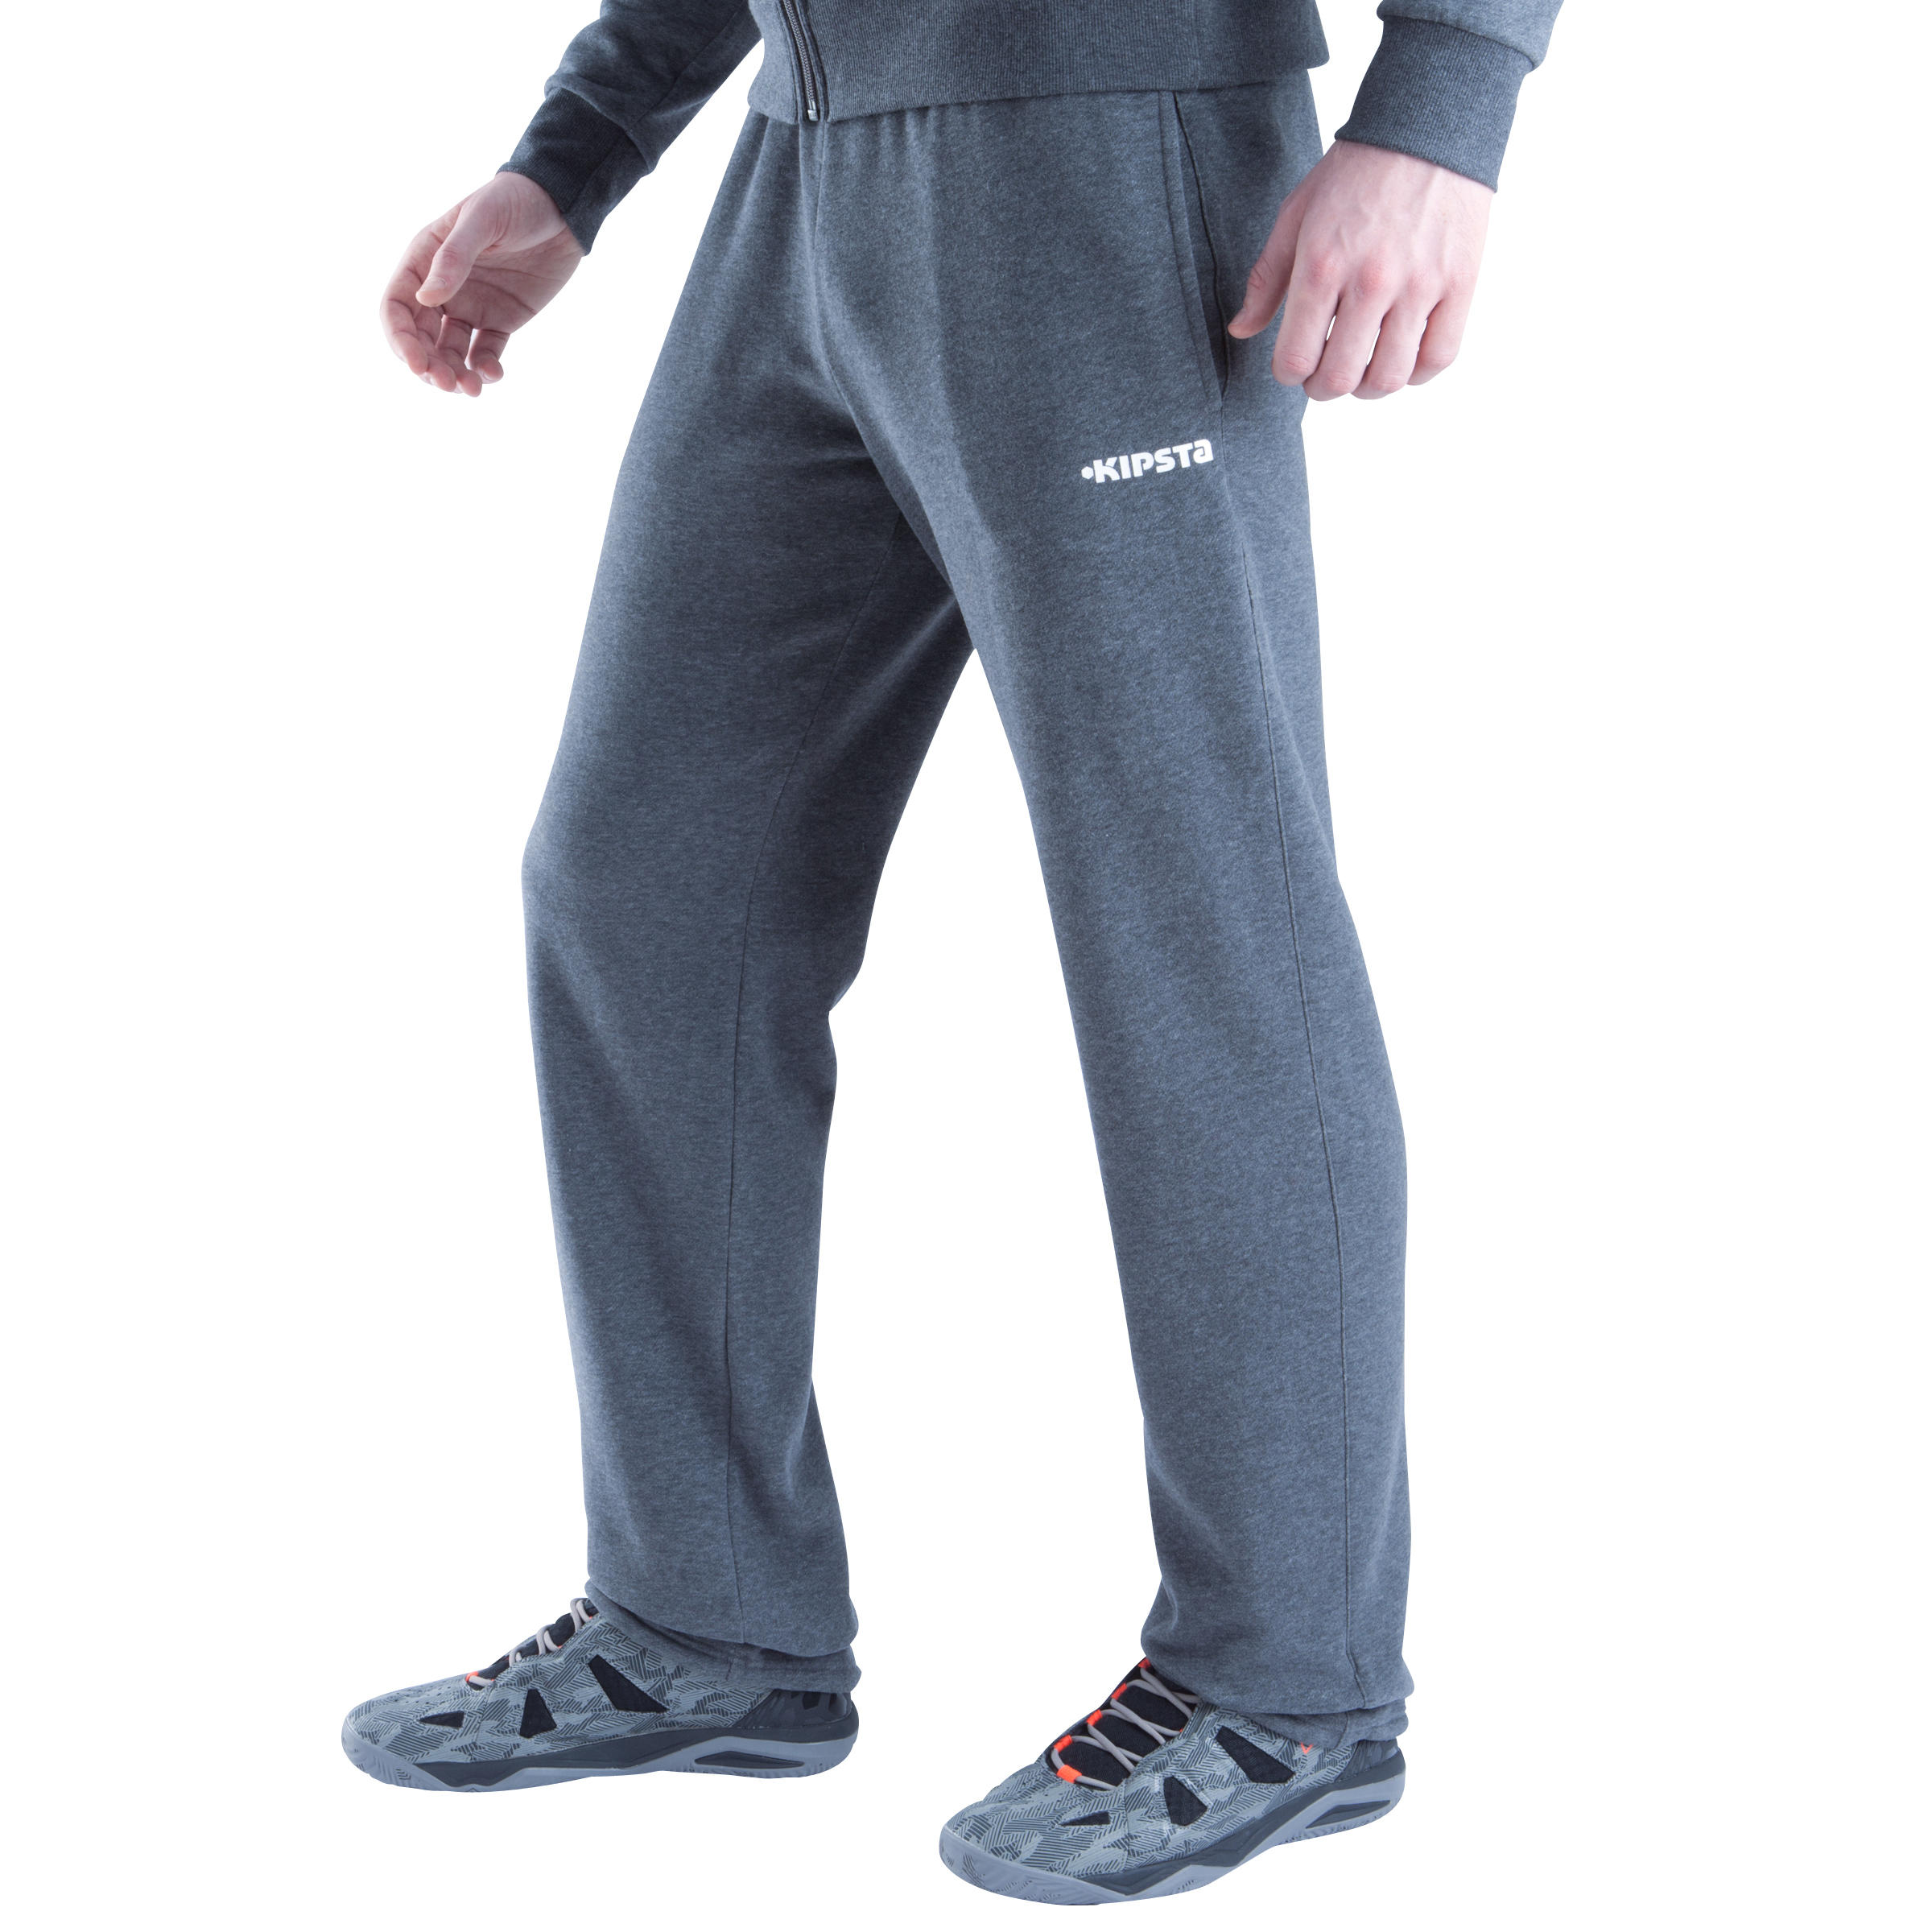 B300 Men's Basketball Sweatpants - Dark Grey 5/10